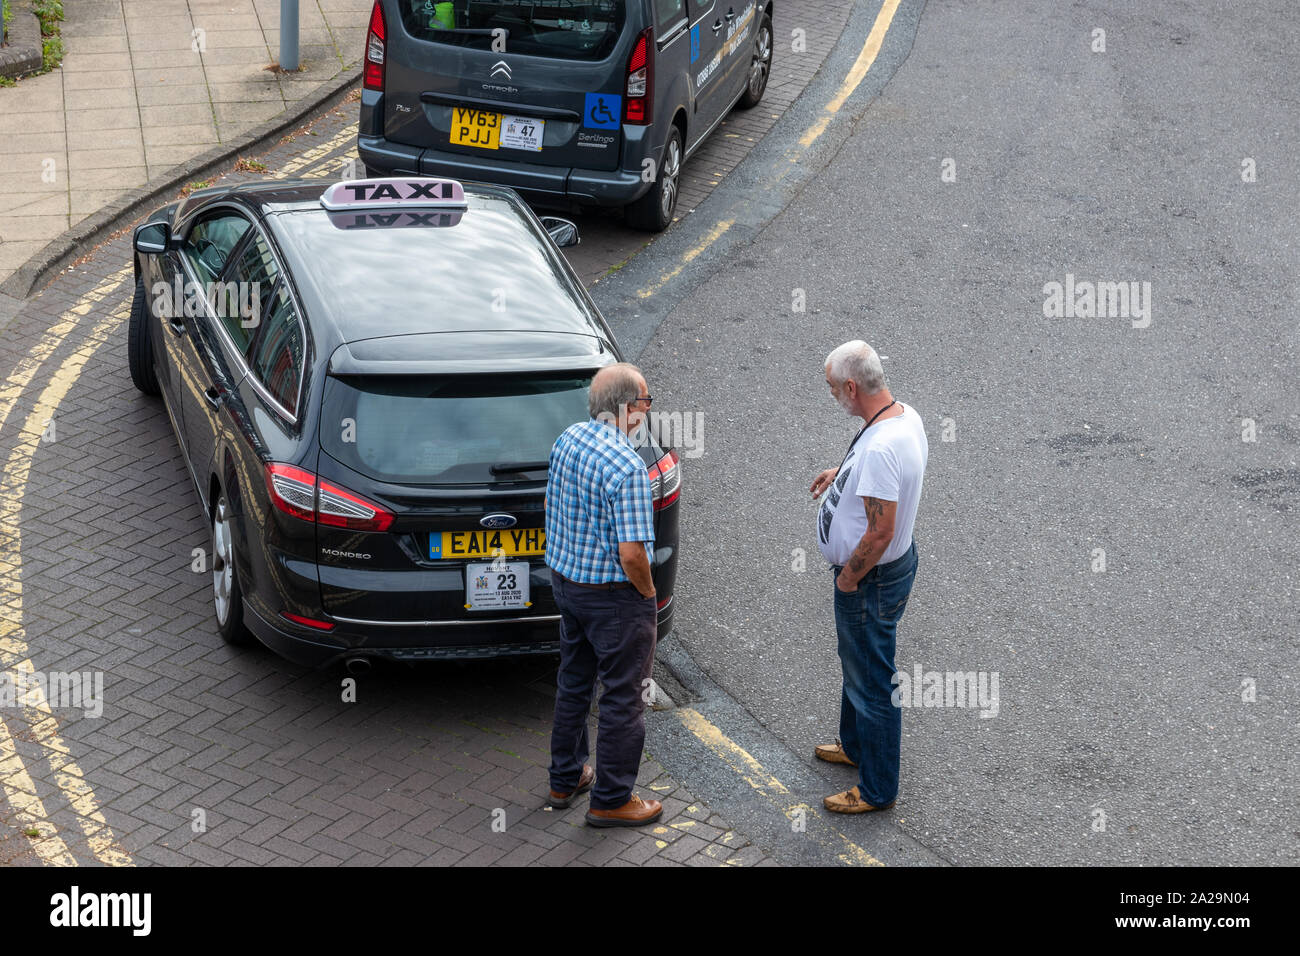 04/01/2019 Havant, Hampshire, UK zwei mittleren Alters oder Taxi Taxifahrer sprechen in der Nähe ihre Autos während des Wartens auf einen Tarif oder Kunde Stockfoto